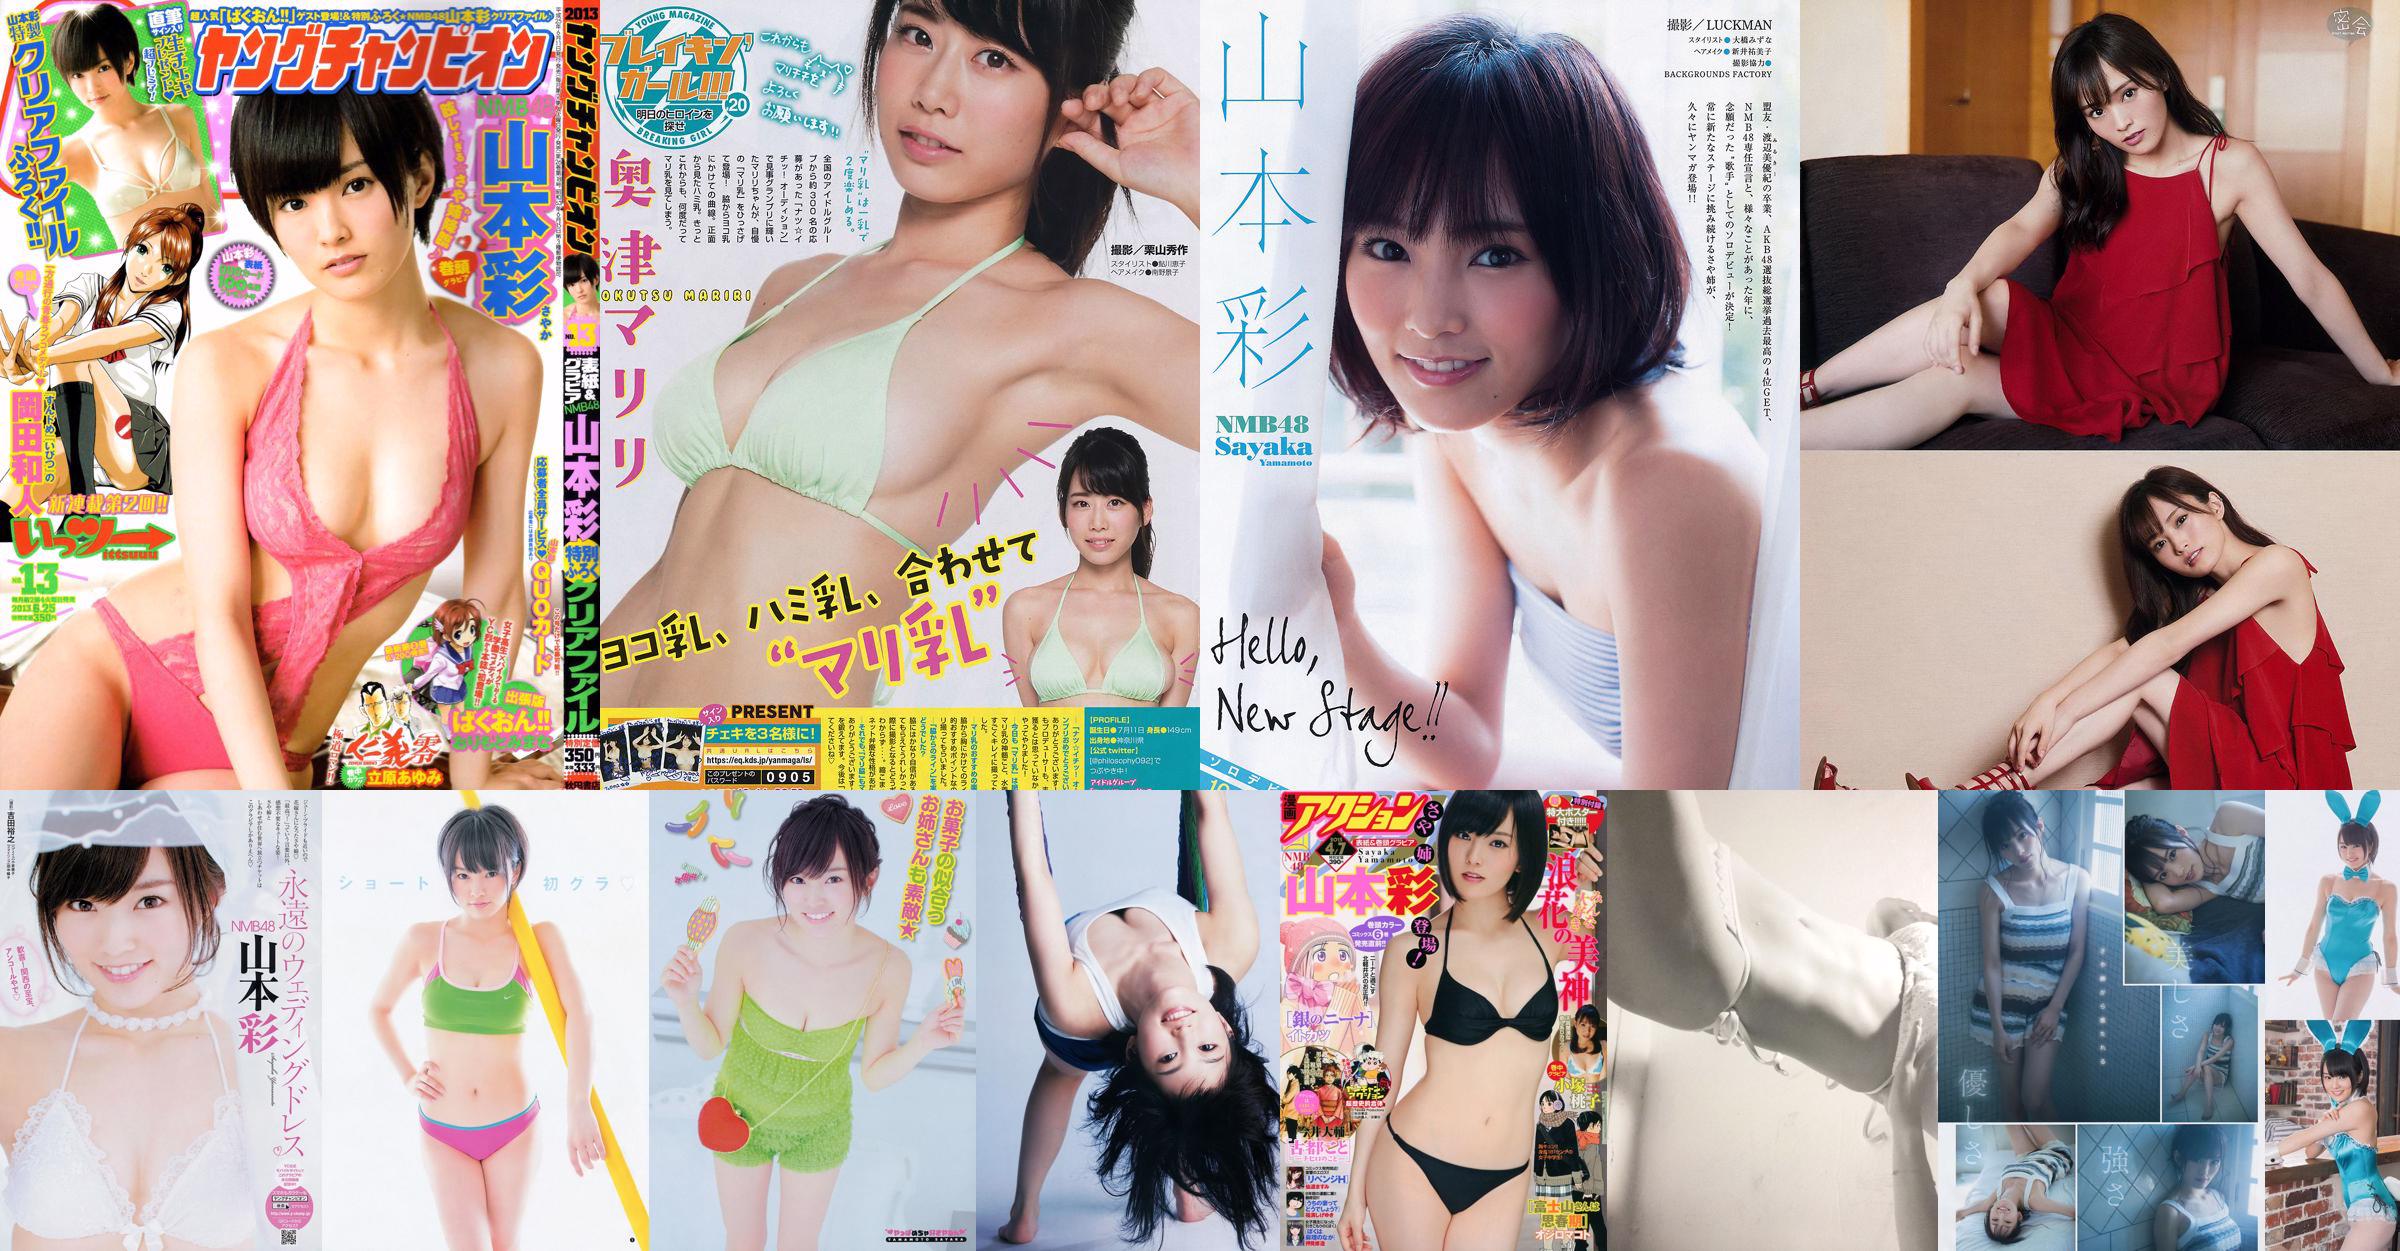 山本彩 西野七瀬 [Weekly Young Jump] 2013年No.11 写真杂志 No.2185b6 第1頁